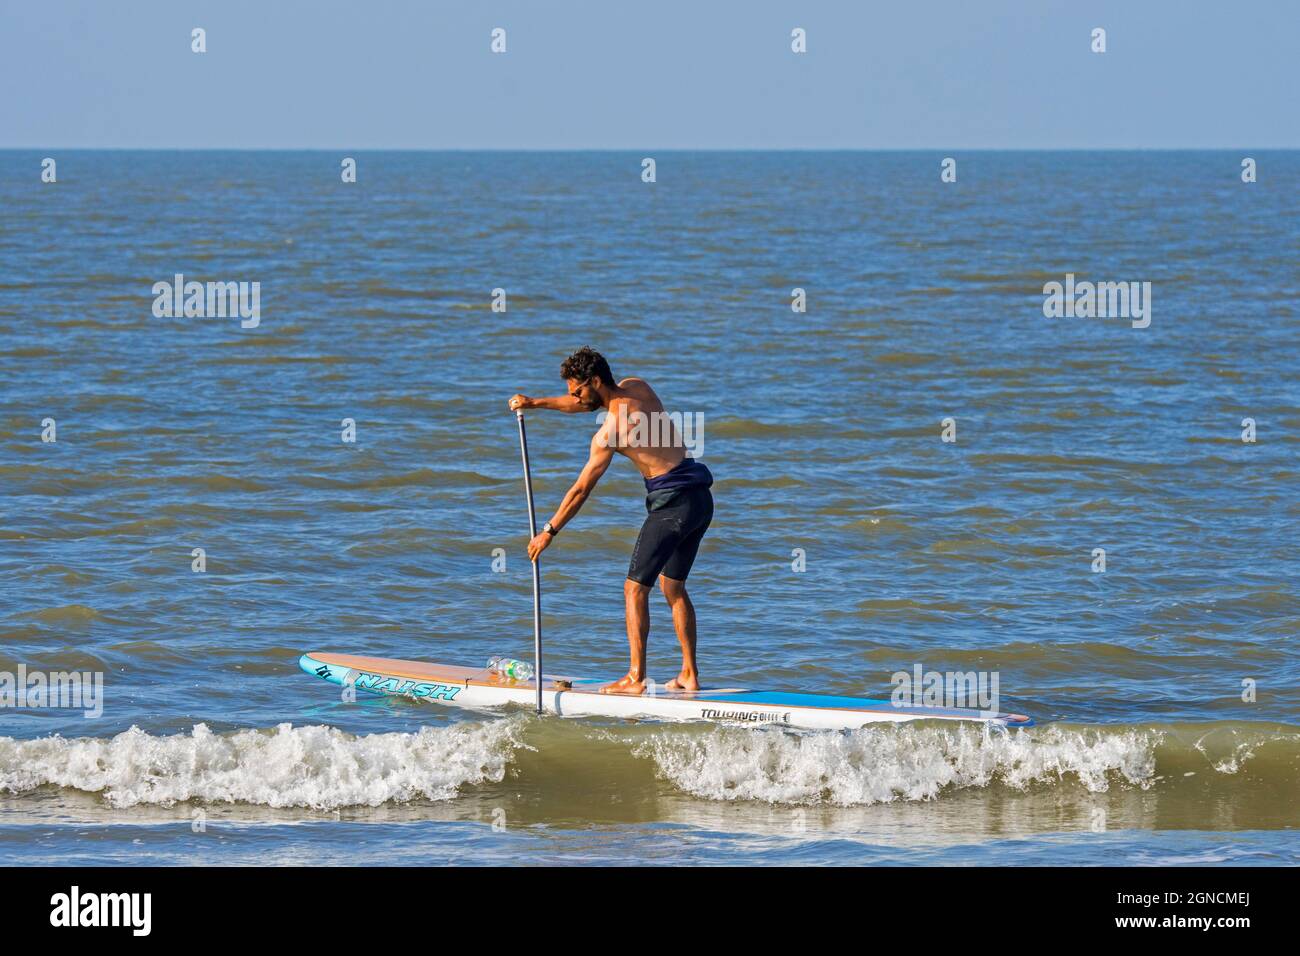 Paddlebarder mit dem Wassersport Stand Up Paddleboarding / Stand Up Paddle Boarding / SUP entlang der Nordseeküste Stockfoto